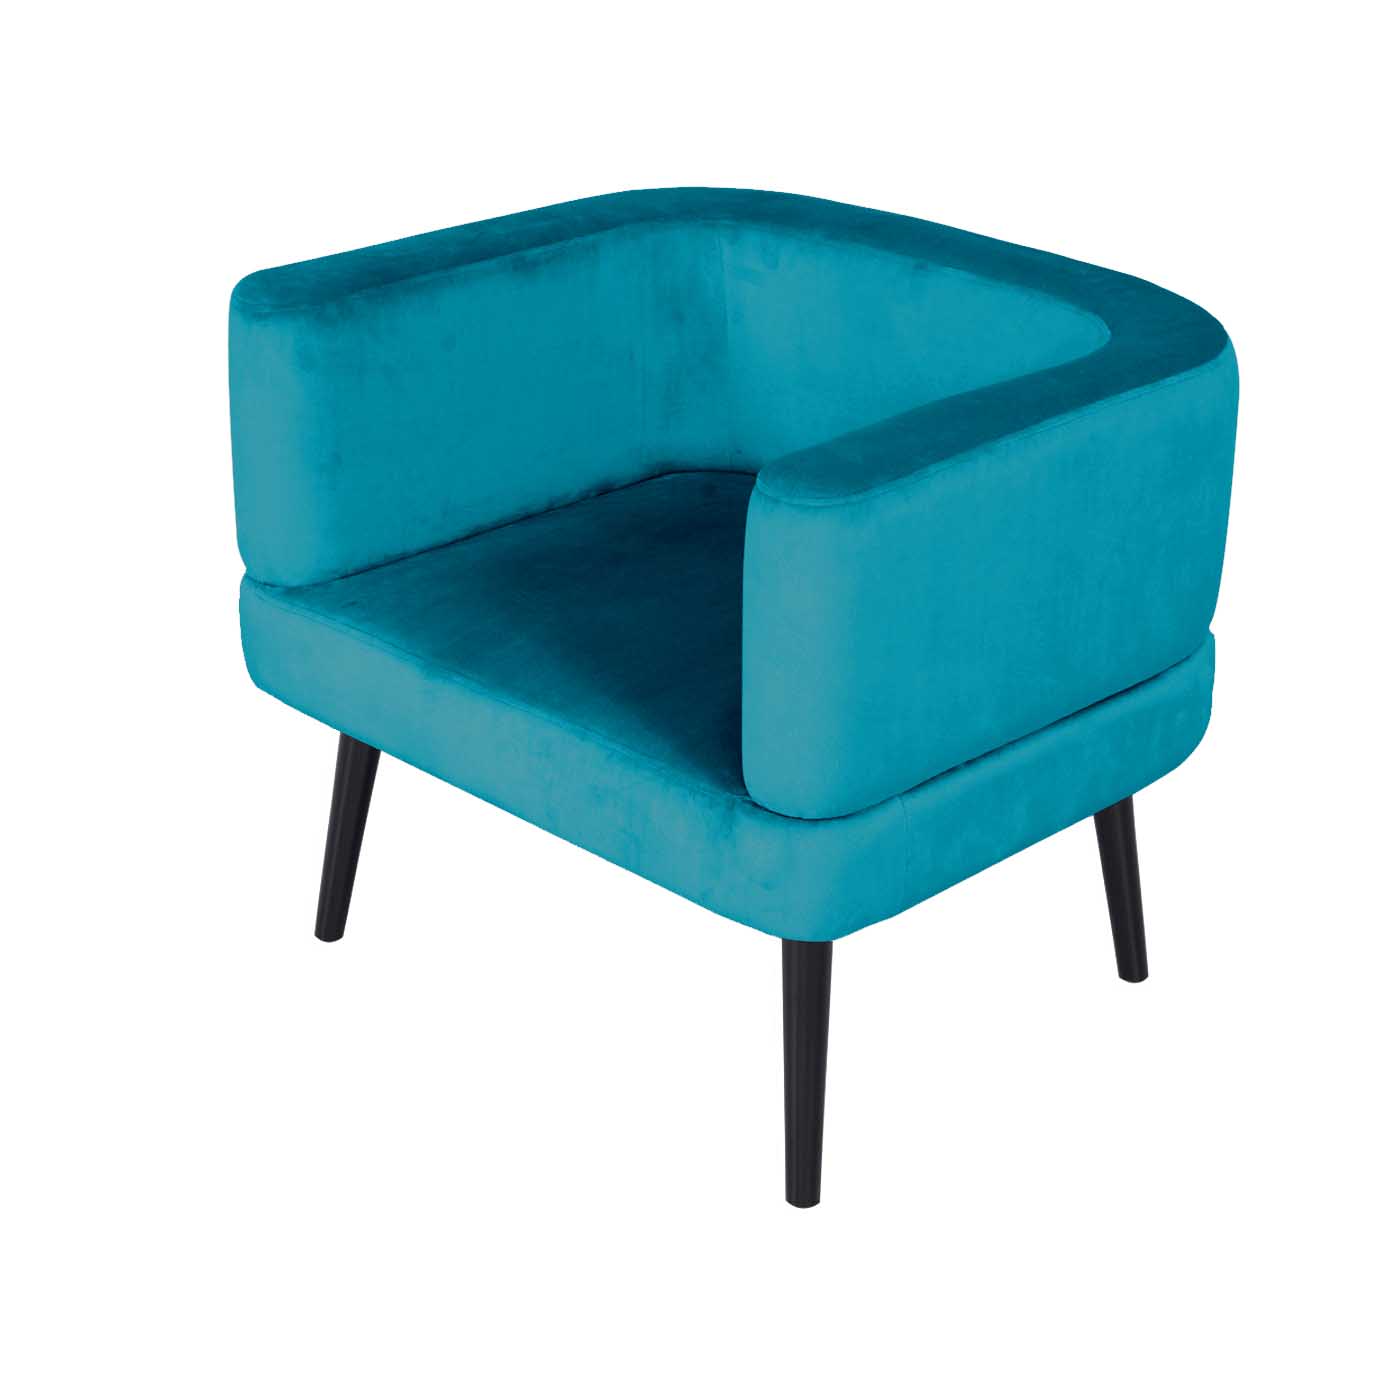 Dalian Turquoise Black Single Sofa